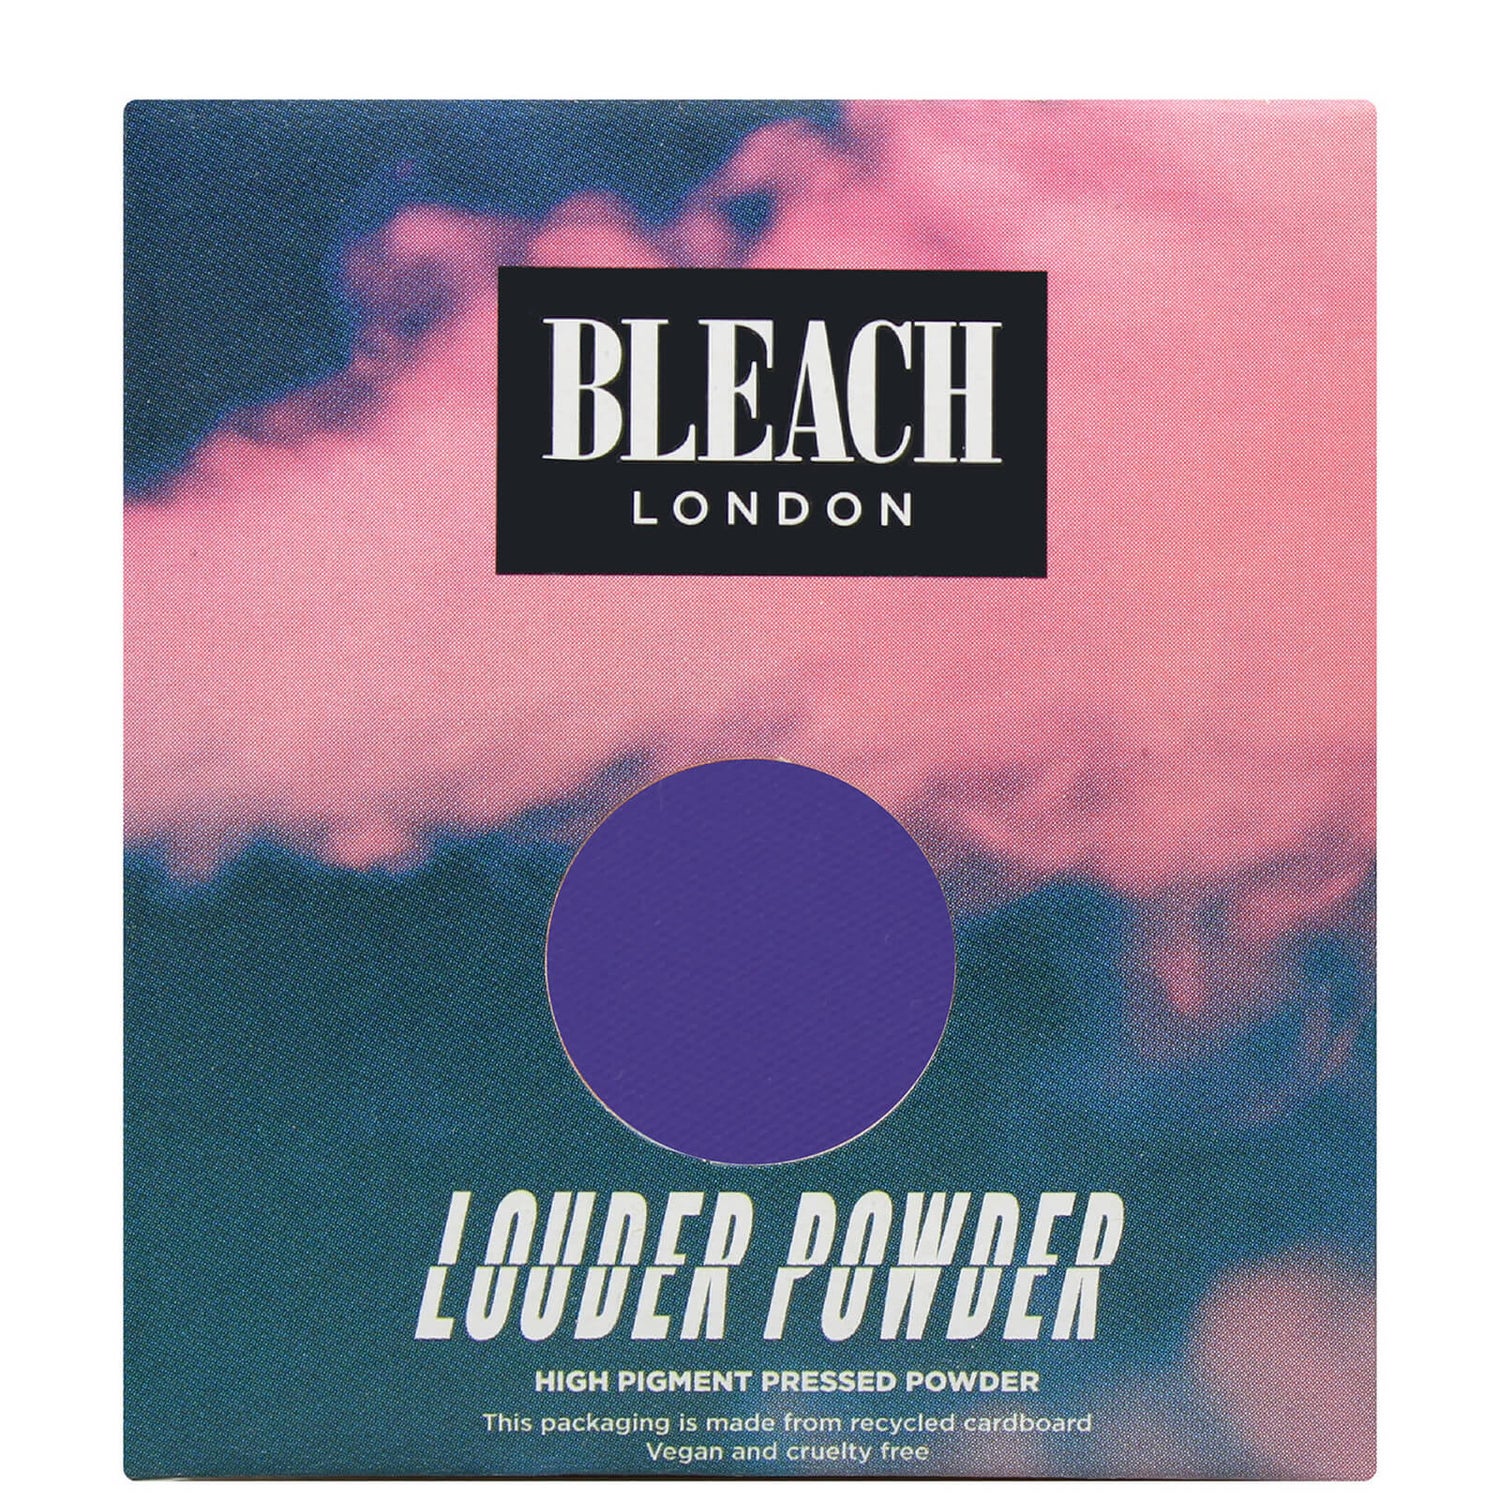 Ombre à paupières Louder Powder BLEACH LONDON – Vs 4 Ma